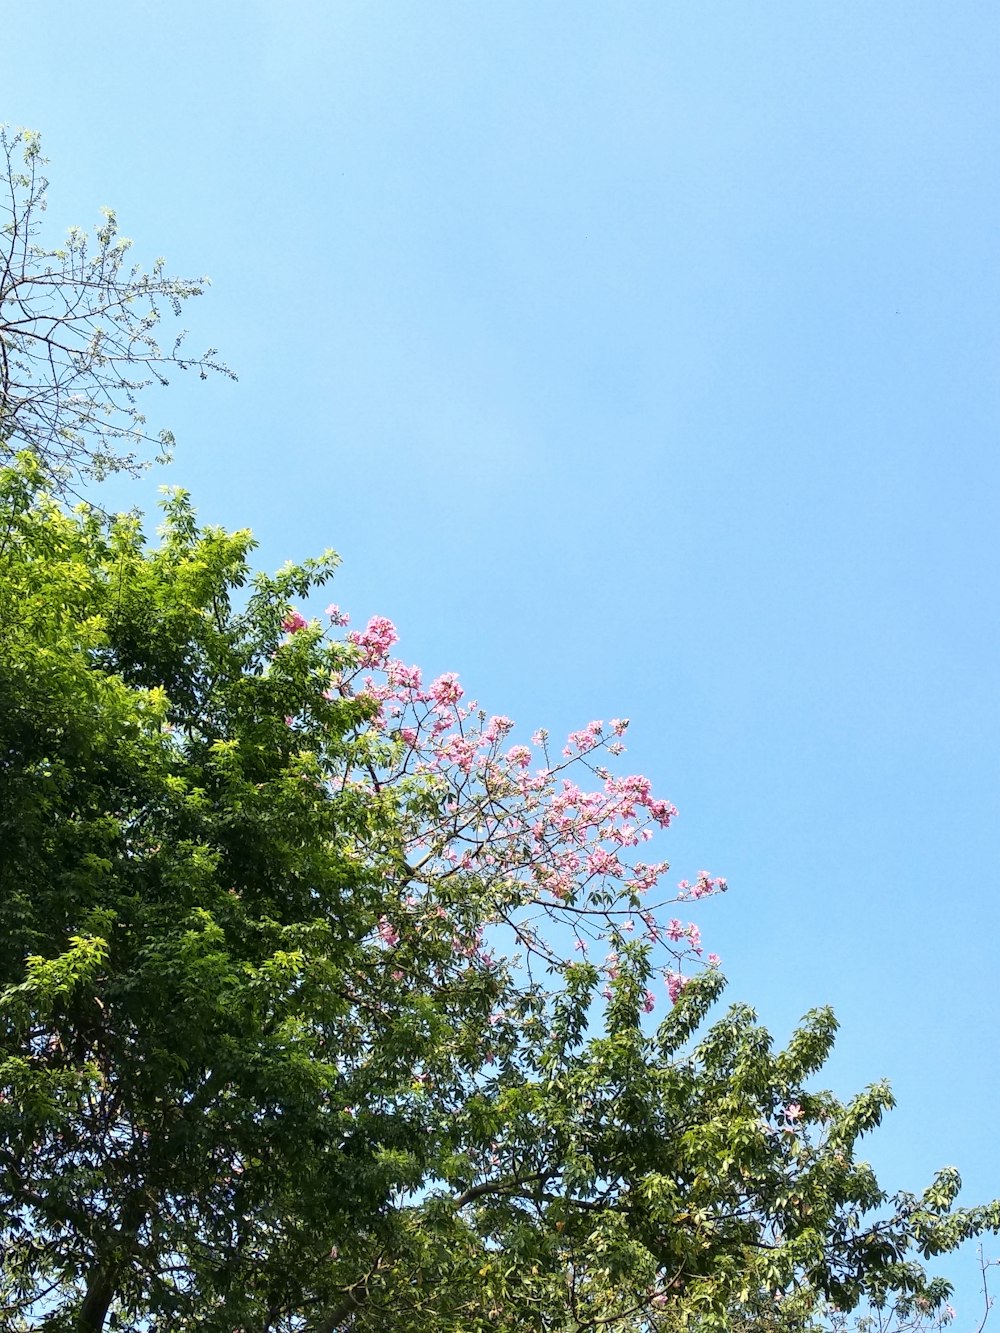 árvore florida de pétalas cor-de-rosa de folhas verdes sob o céu azul calmo